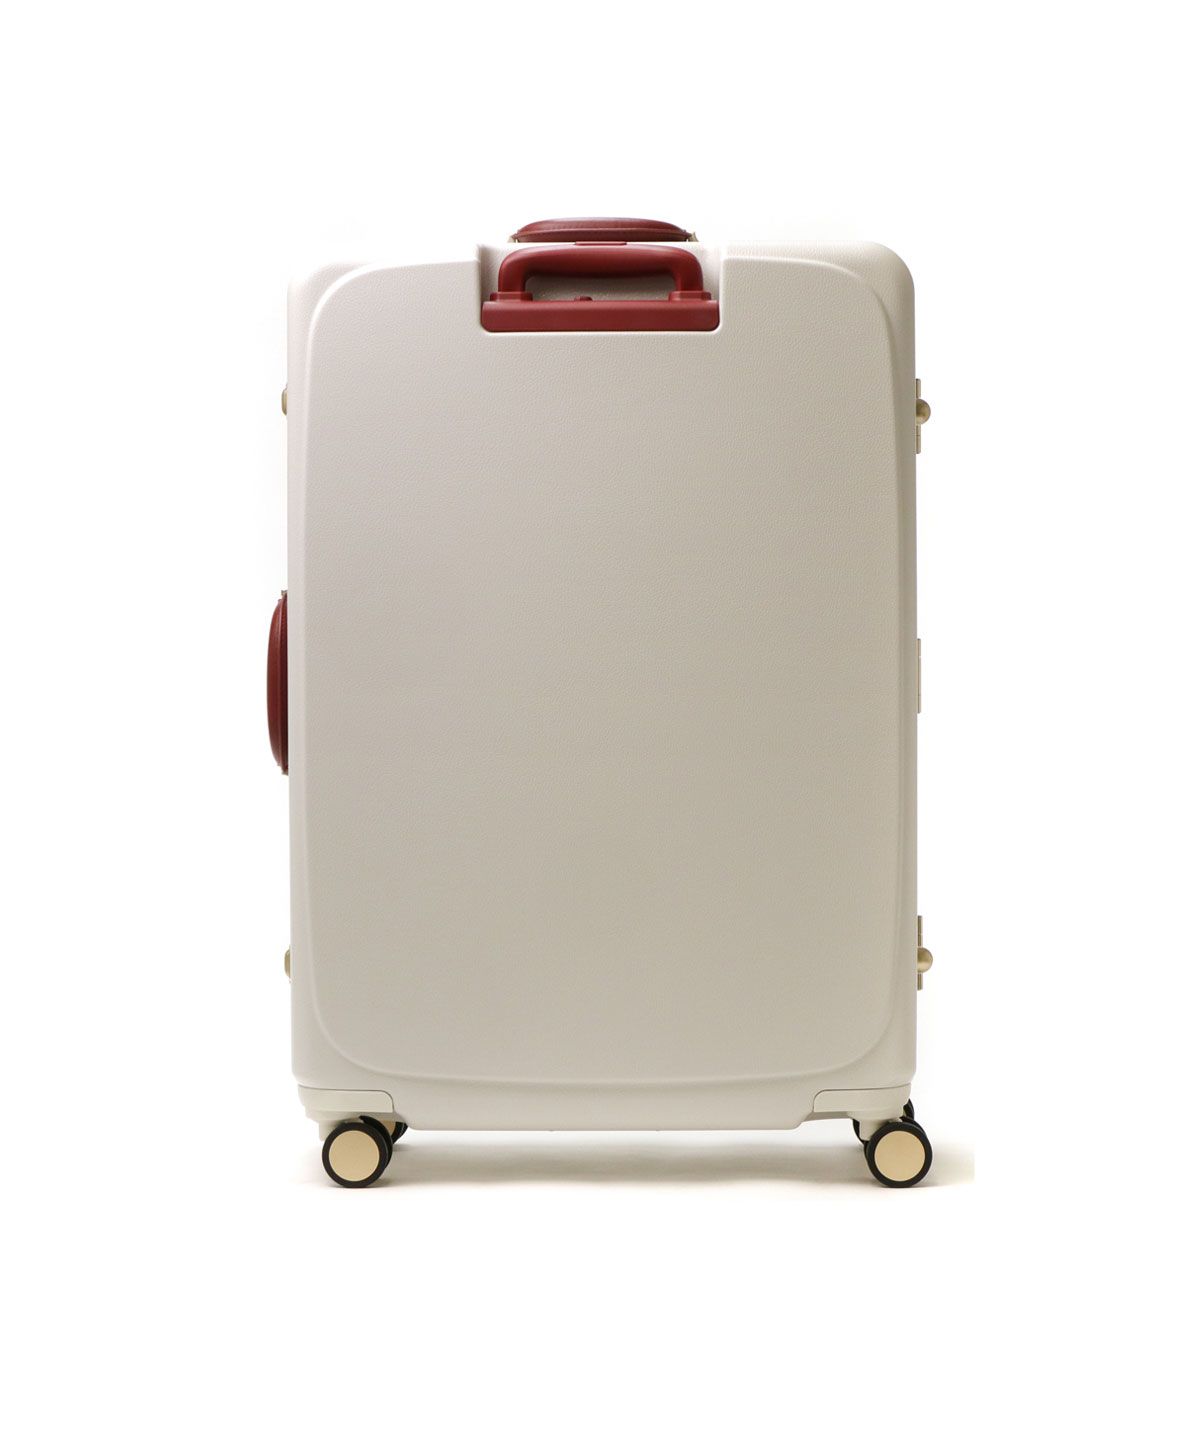 5年保証 ハント スーツケース キャリーバッグ 軽量 Lサイズ フレーム